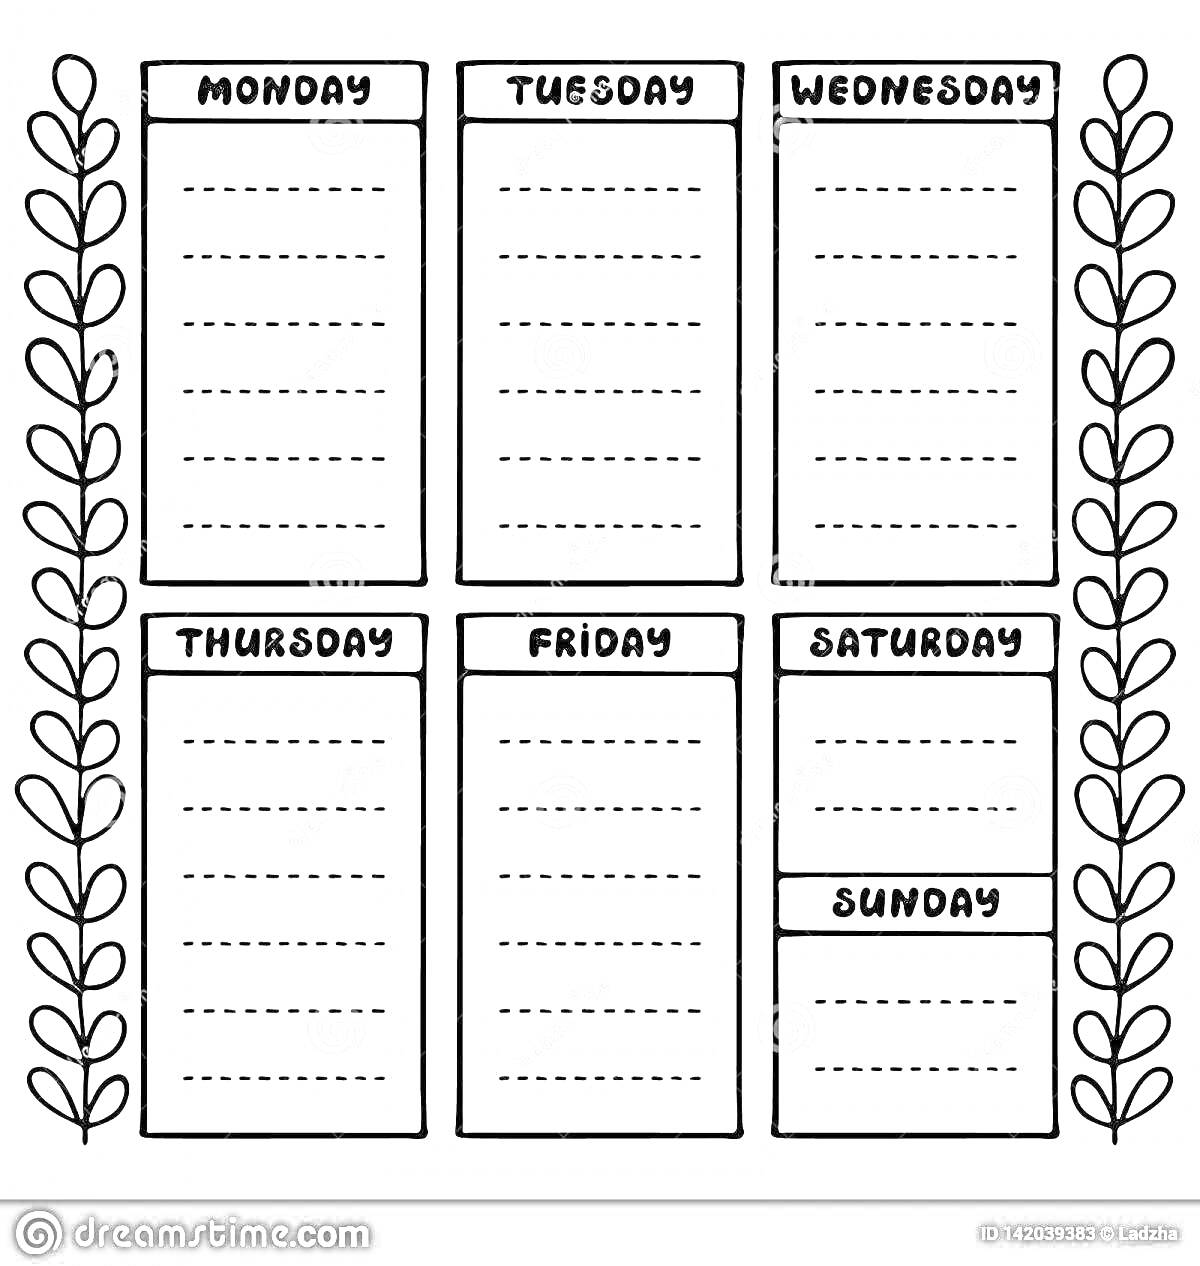 Планер с днями недели, включая понедельник, вторник, среду, четверг, пятницу, субботу и воскресенье, с узором из растительных листьев по бокам.